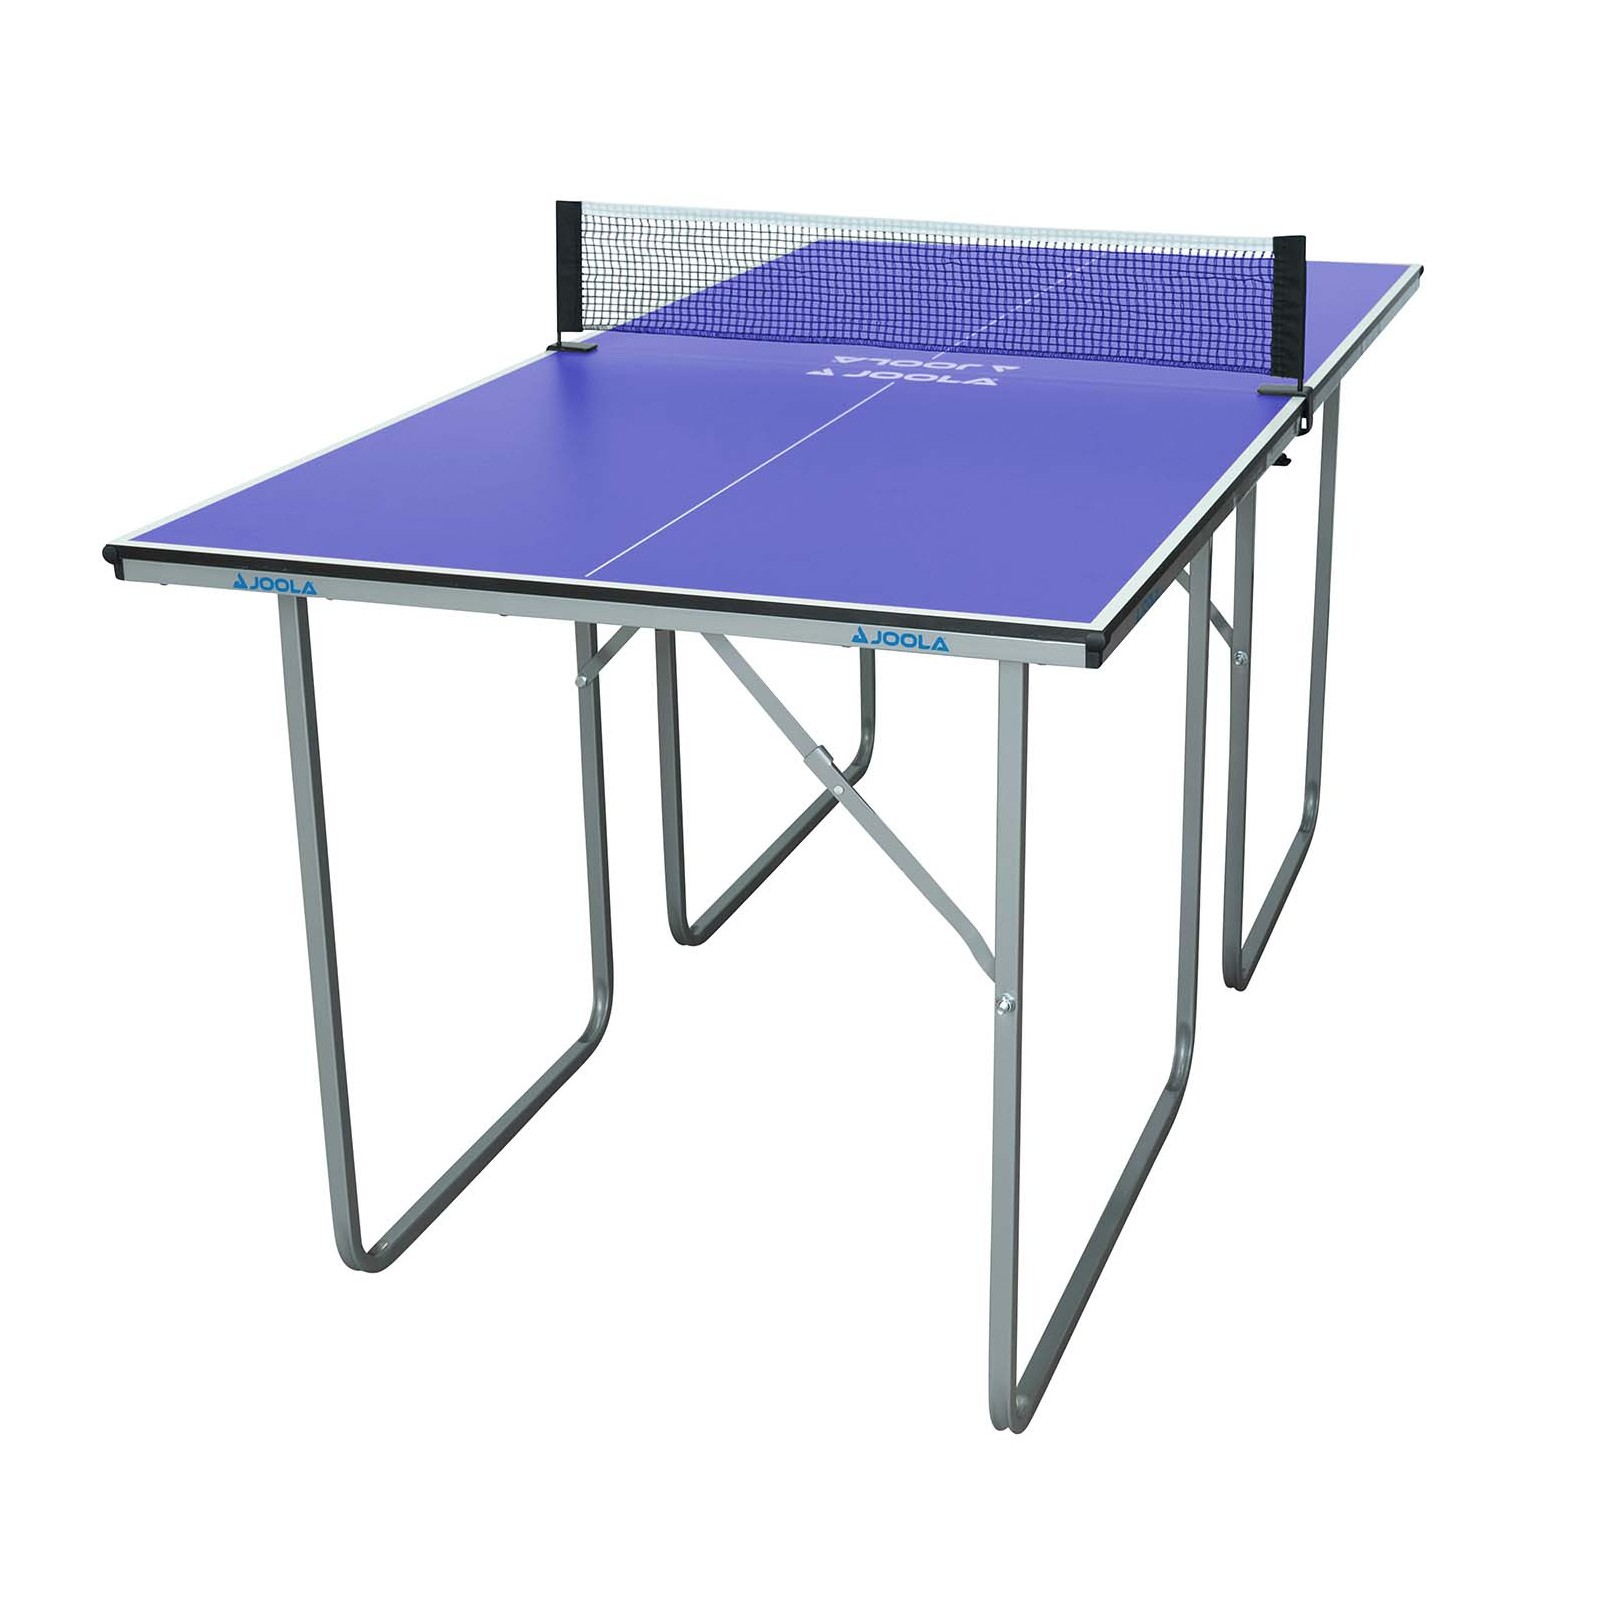 Joola Mid Size Table Tennis Table - Fitshop